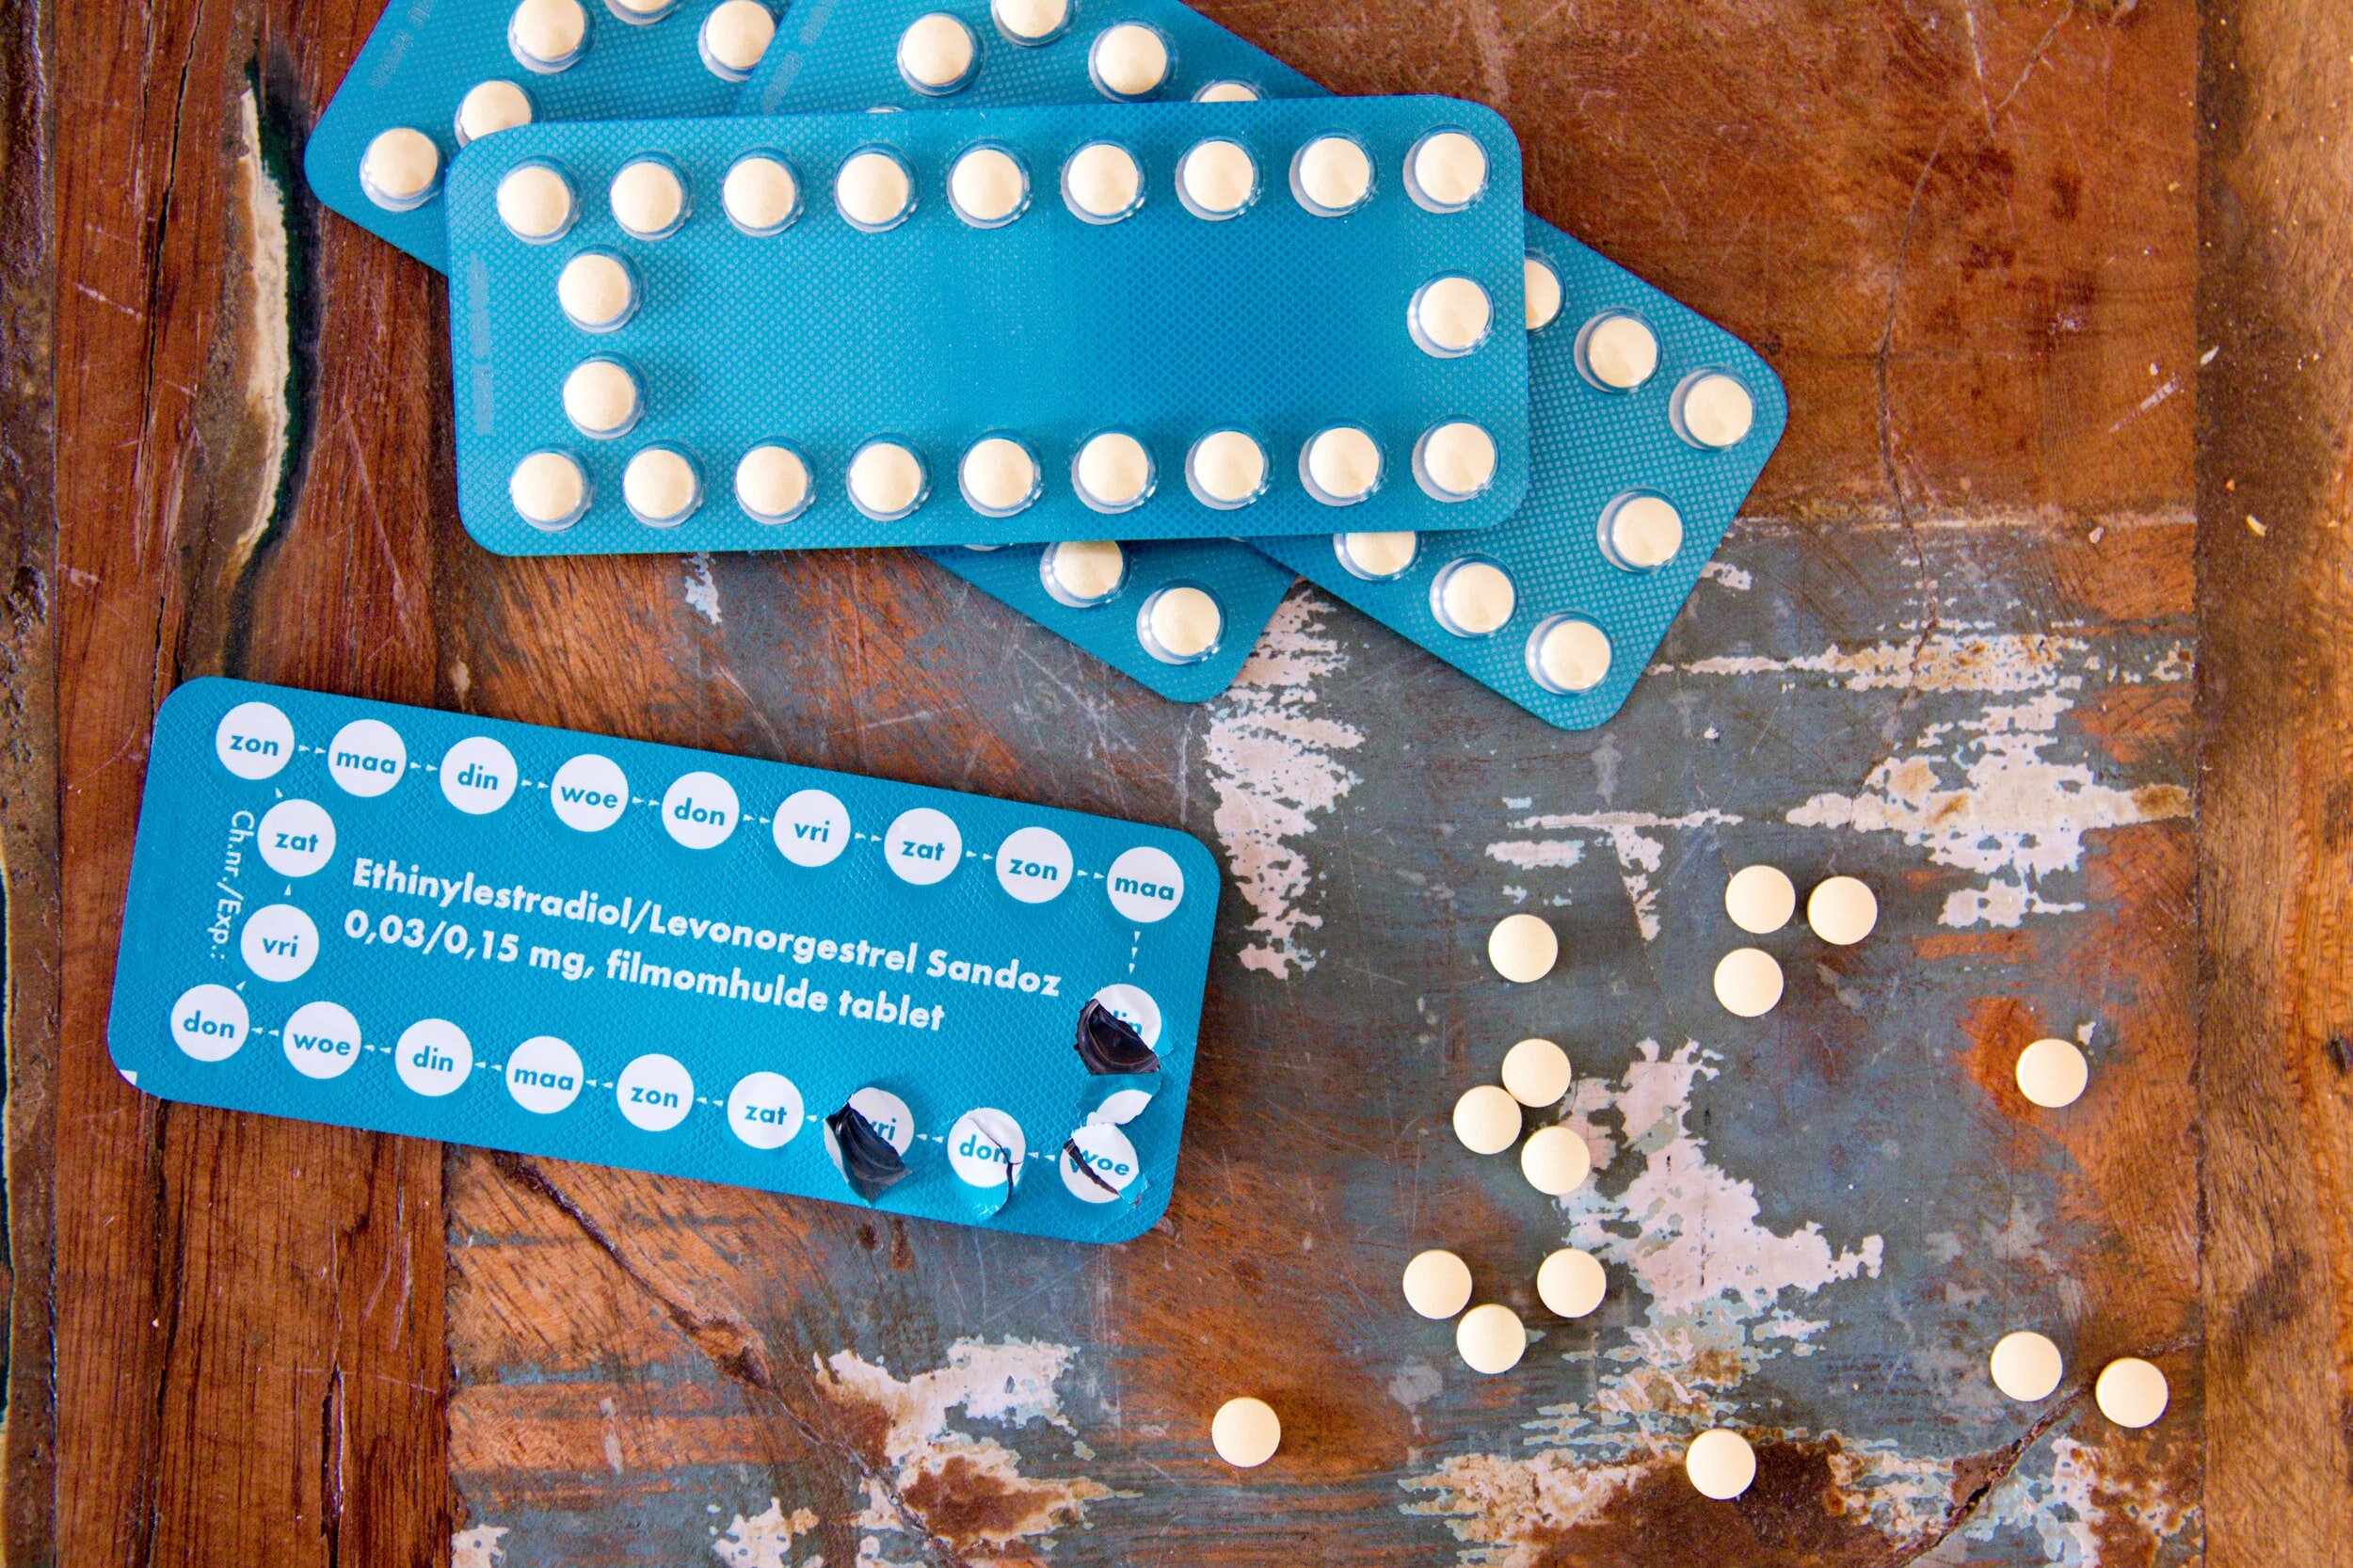 Womens Contraceptive Pill